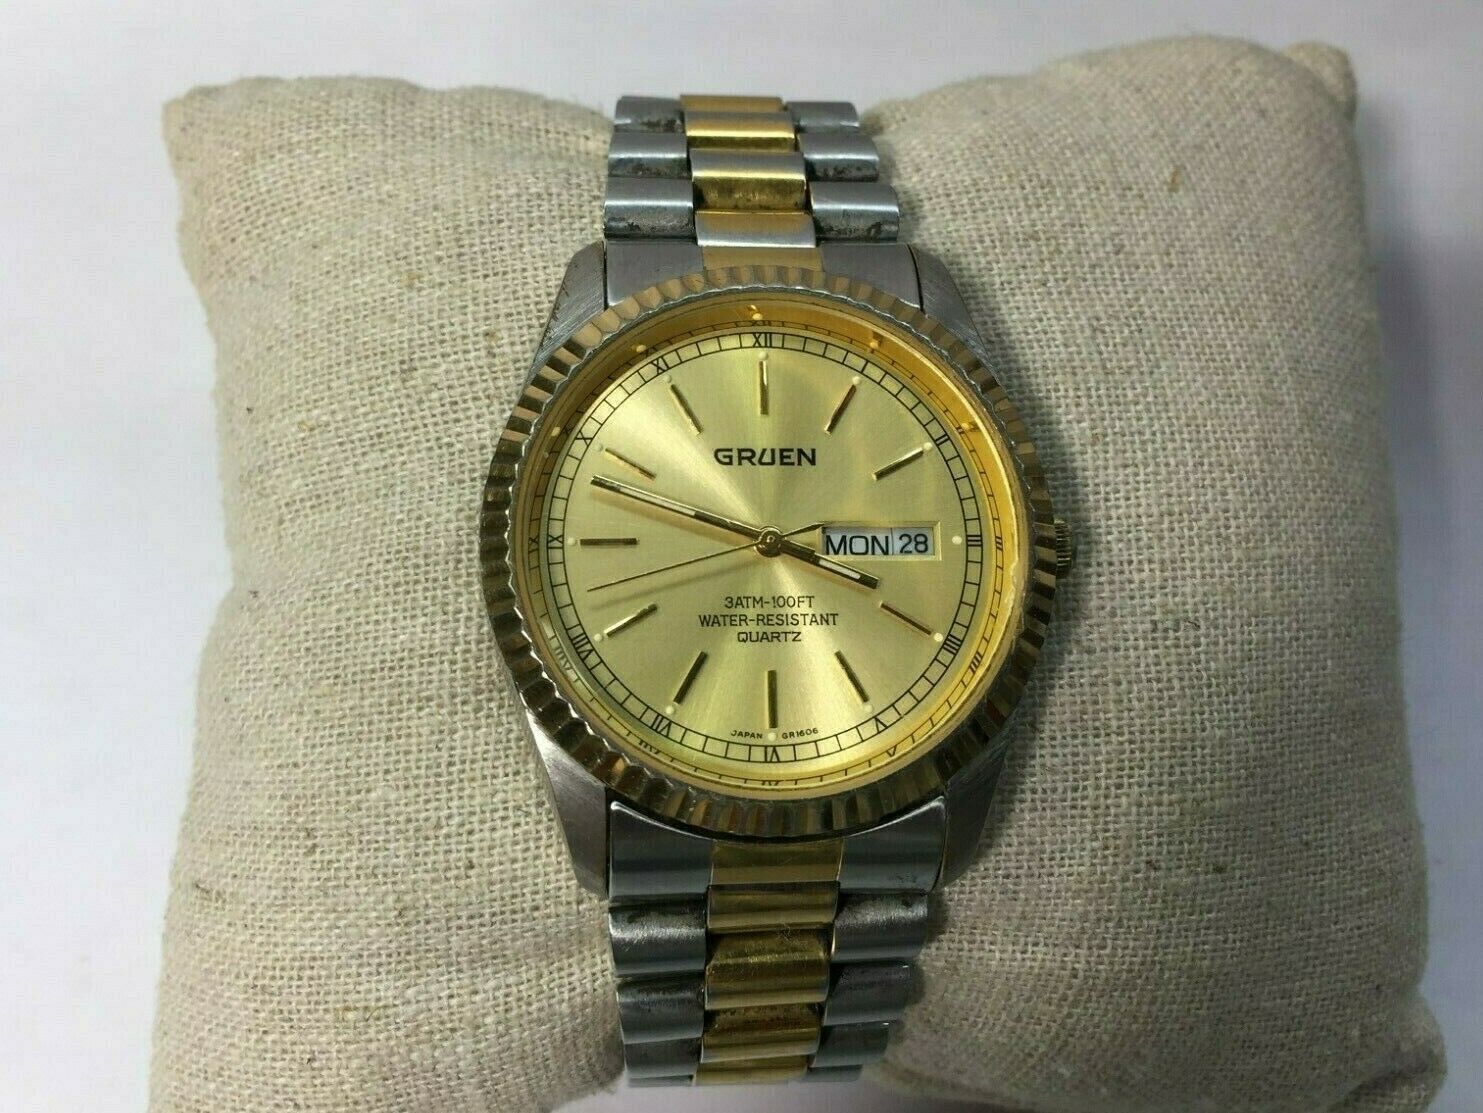 Vintage Gruen Men's Quartz Wrist Watch #219-2105 Working With Date ...